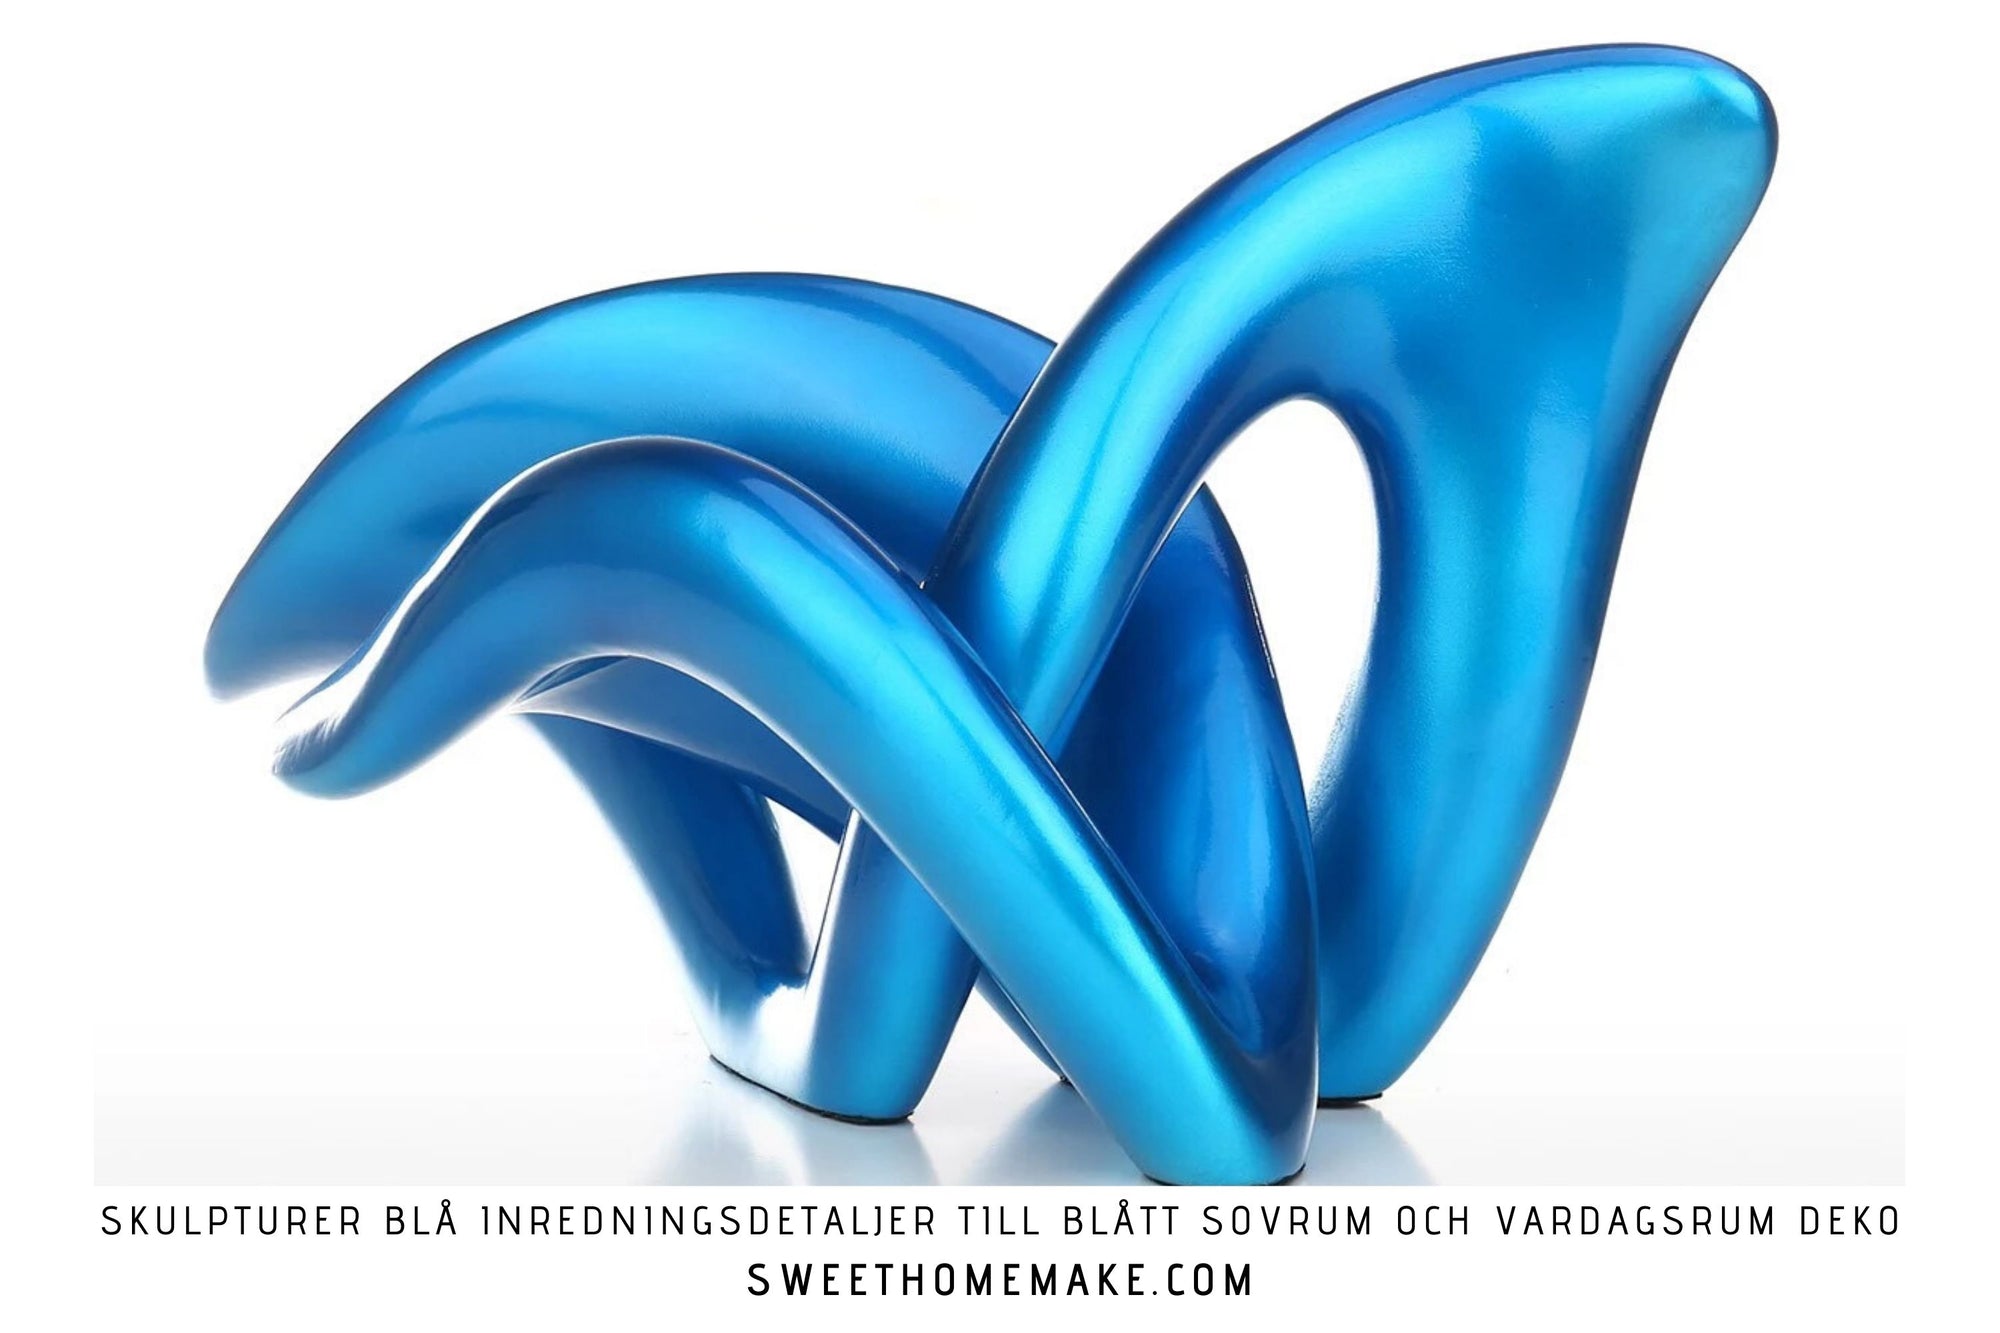 Skulpturer Blå Inredningsdetaljer till Blått Sovrum och Vardagsrum Deko